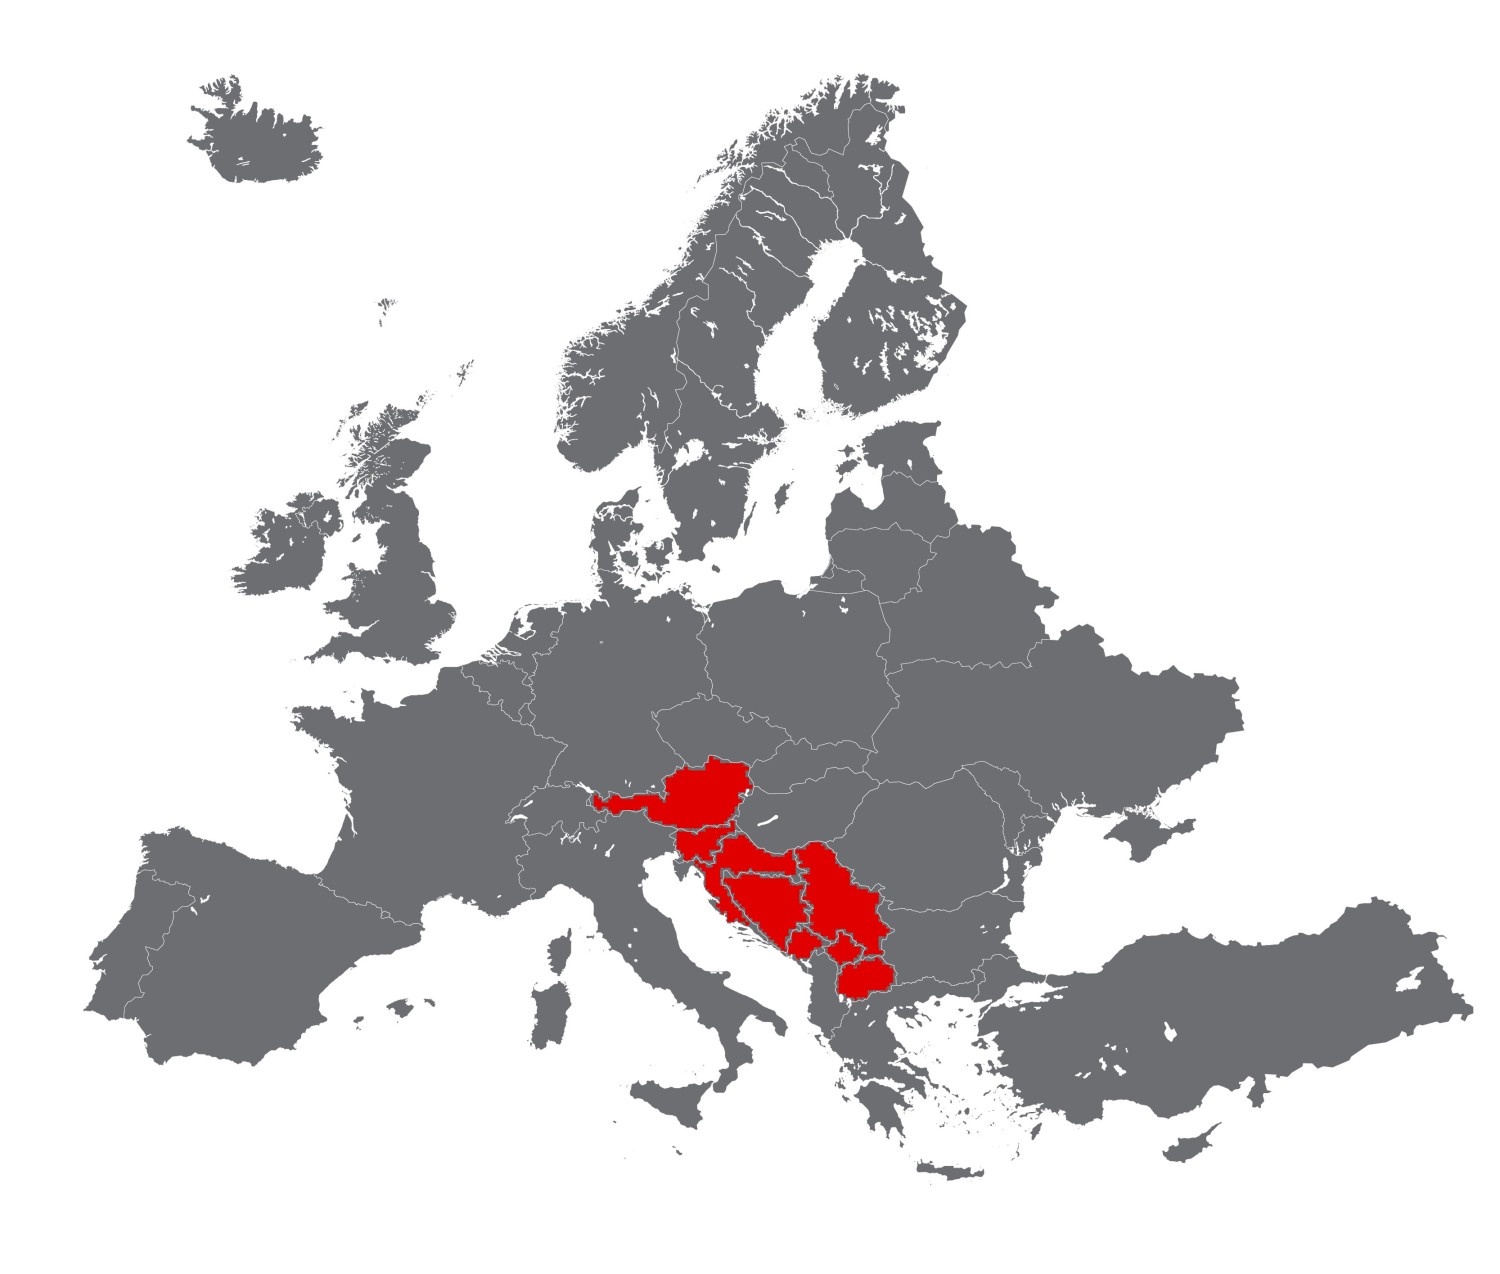 Europakarte fuer Afcona v3